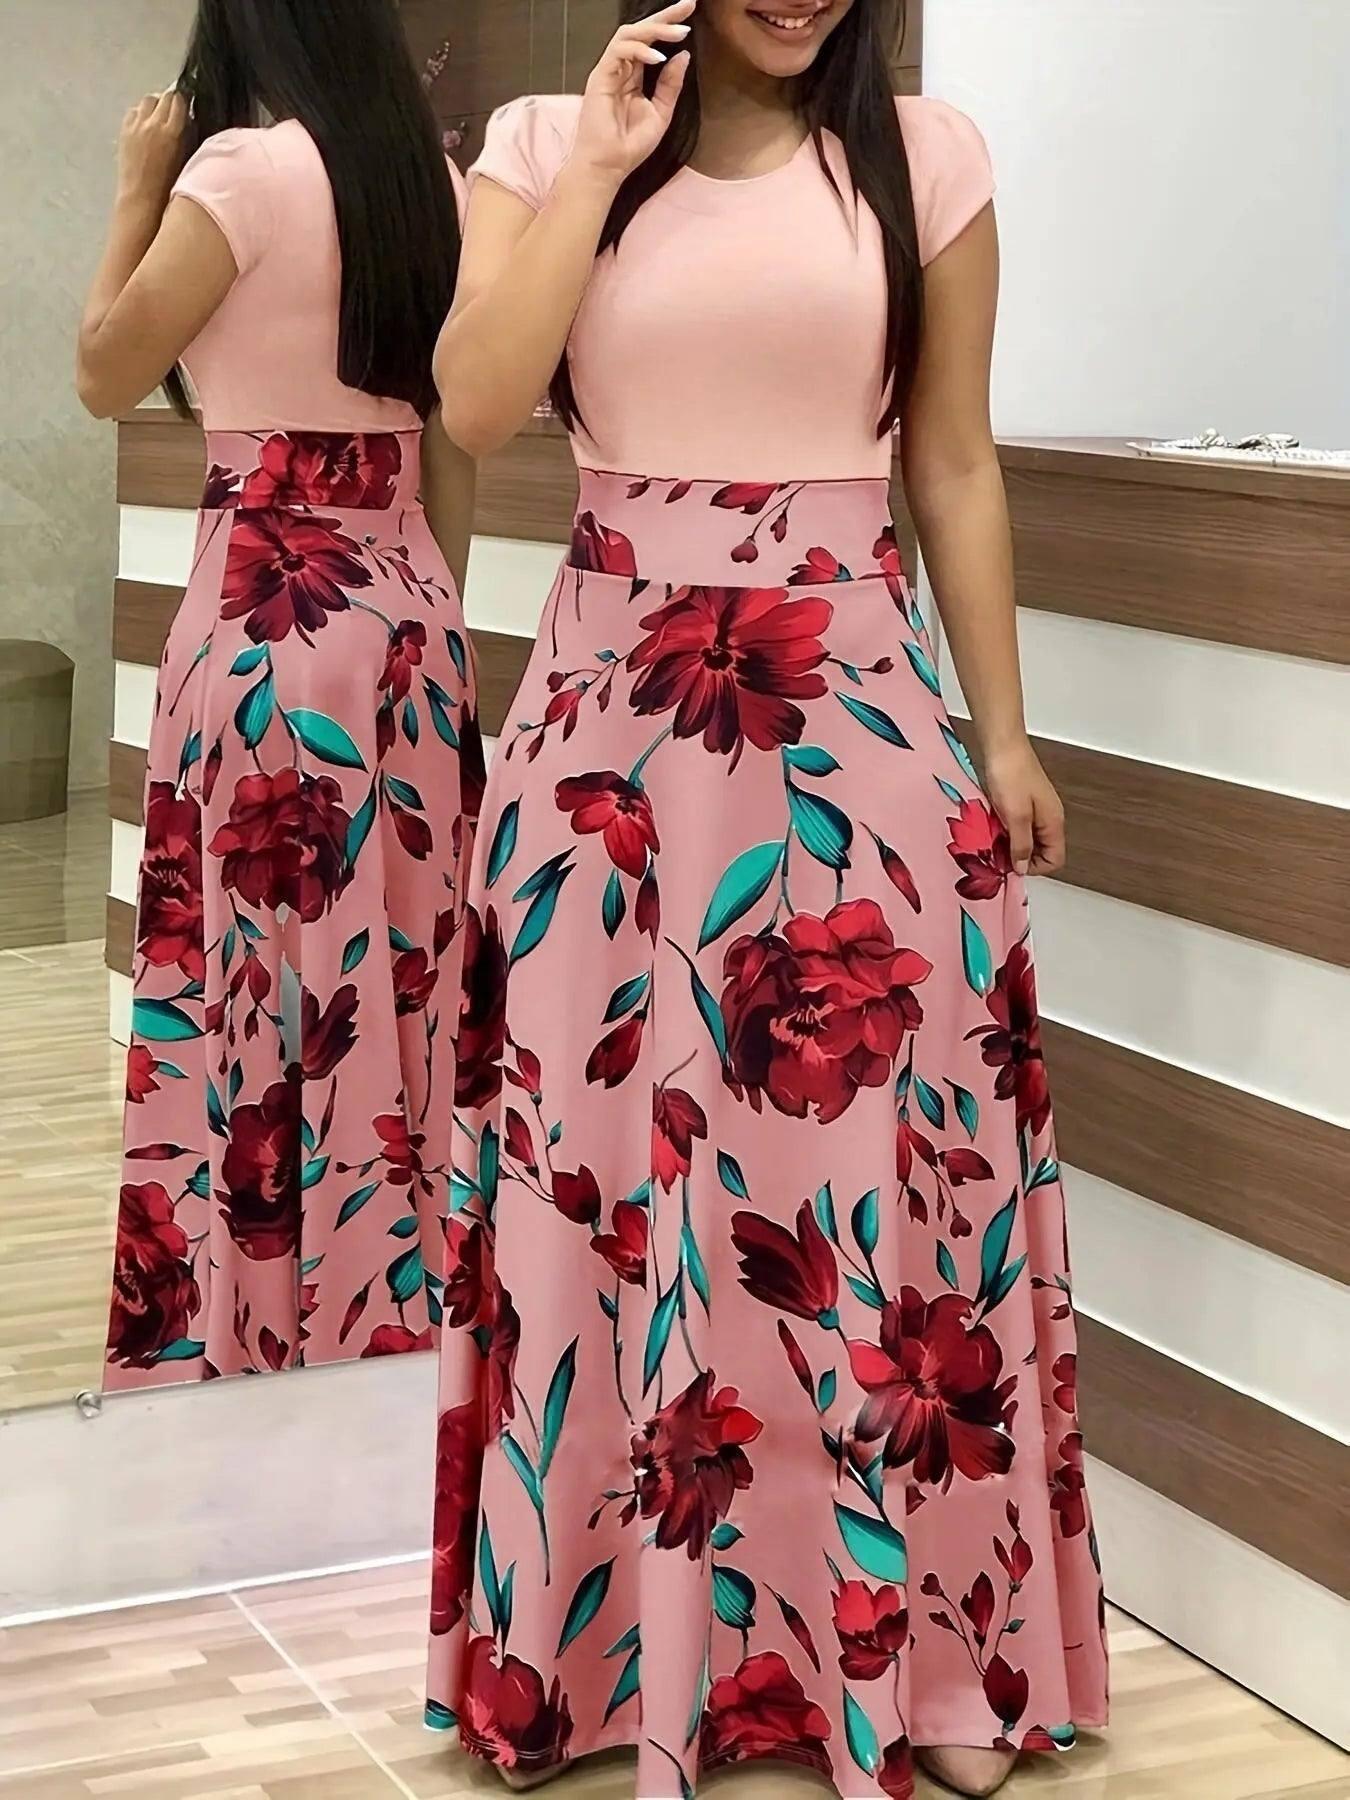 Elegant Floral Maxi Dress for Spring Events-Pink-2